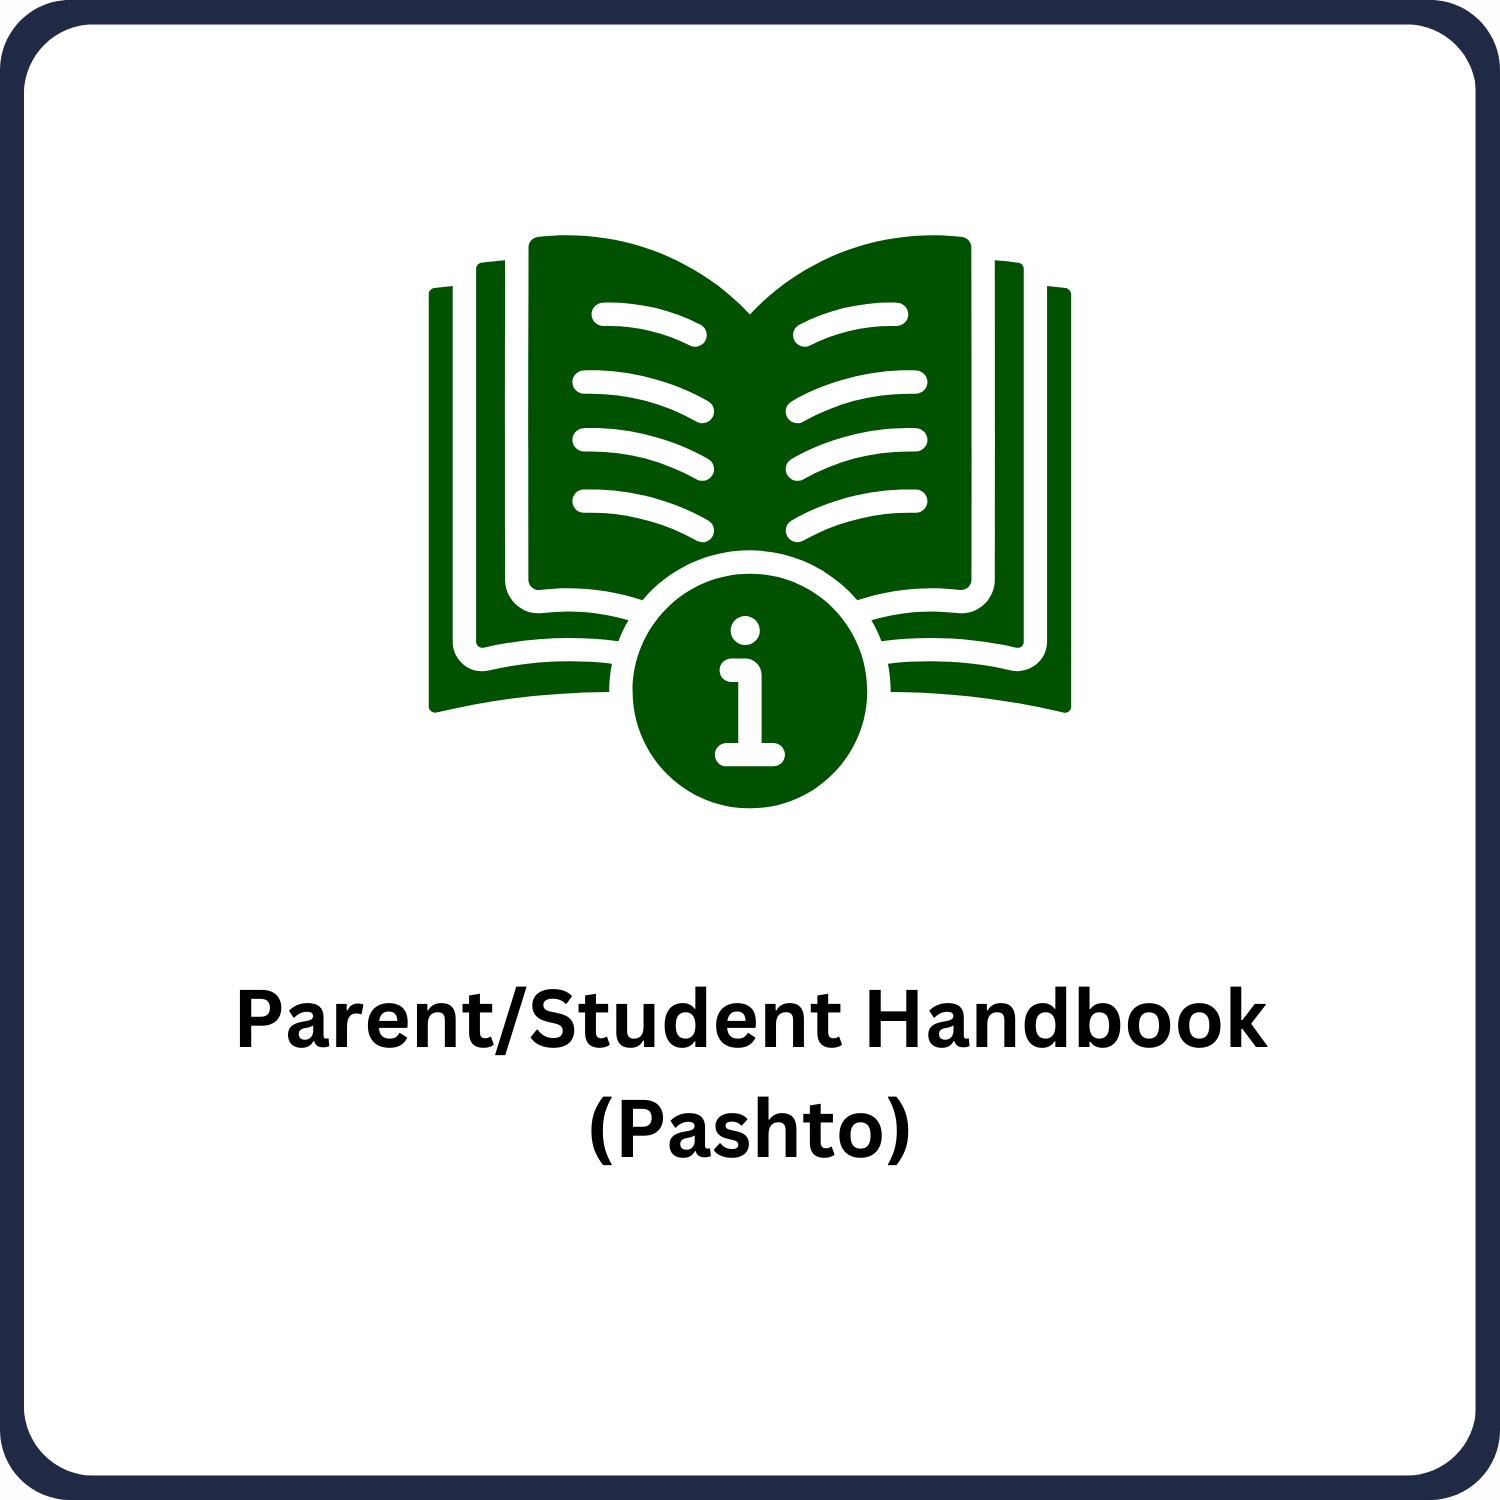 Parent/Student Handbook (Pashto)